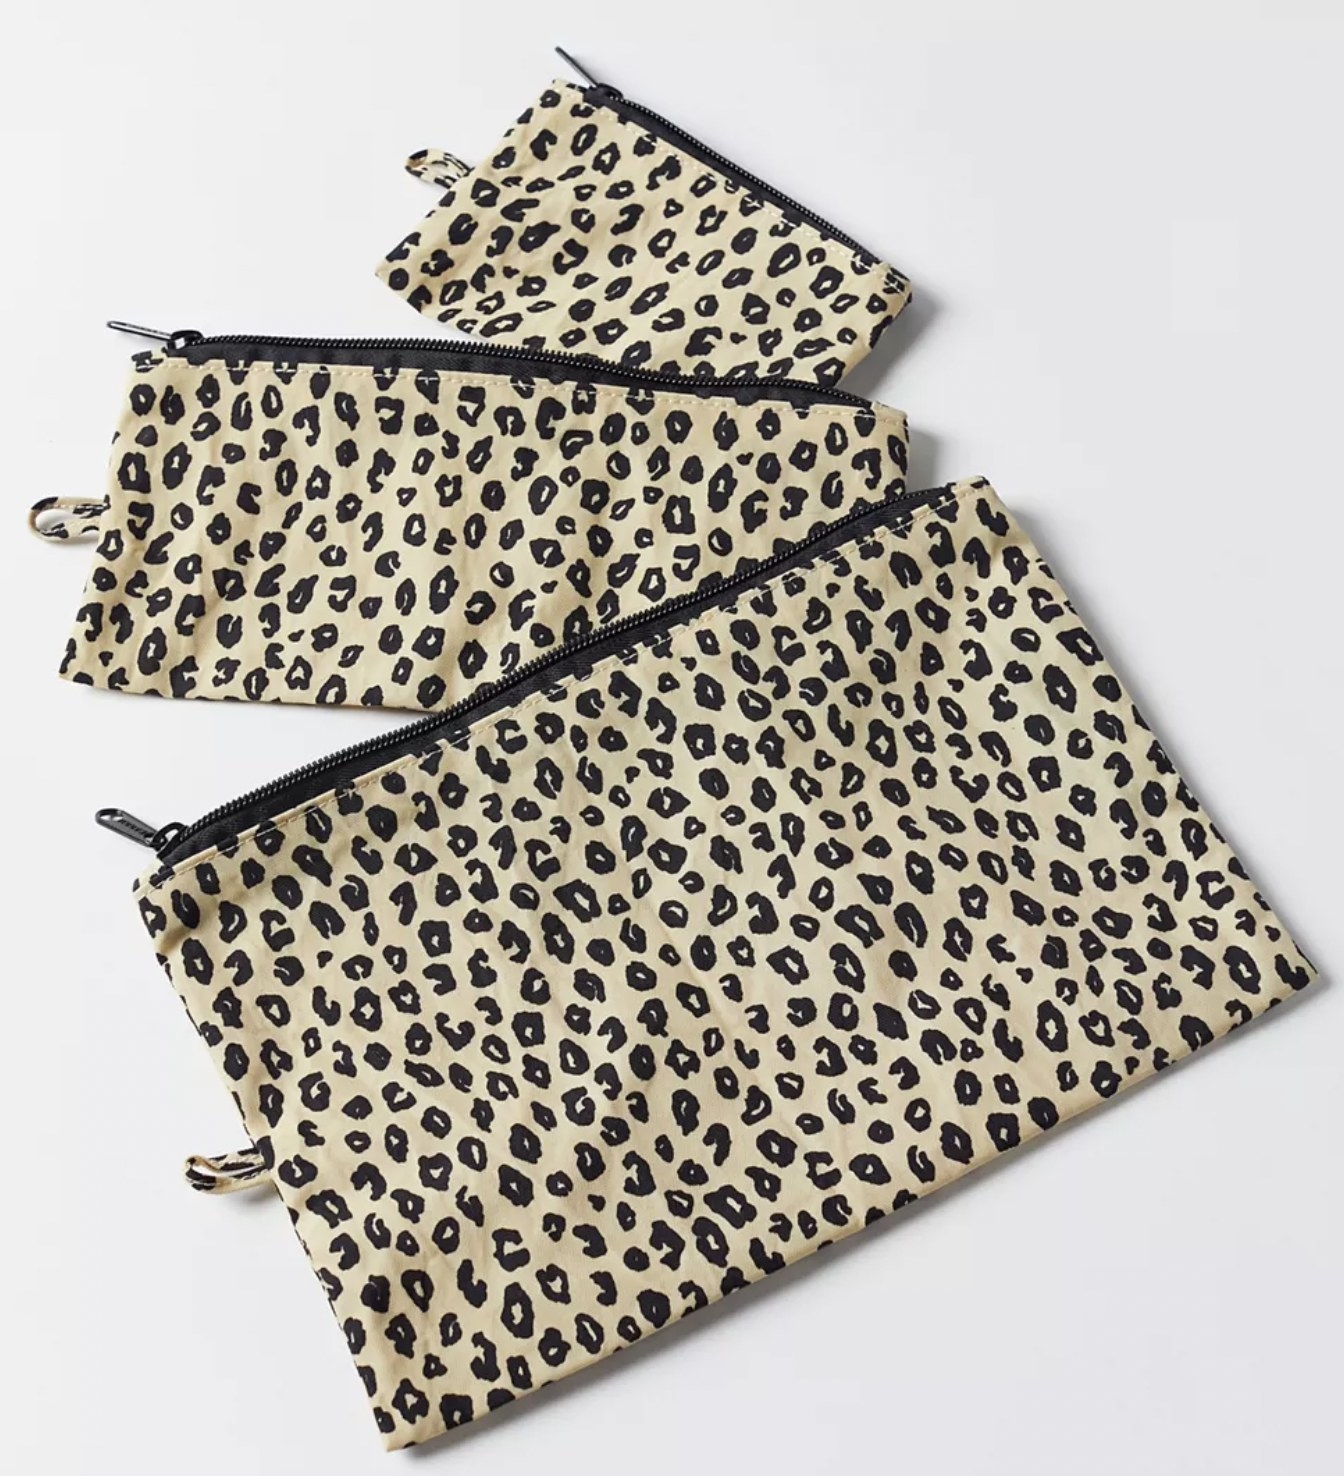 a leopard print pouch set